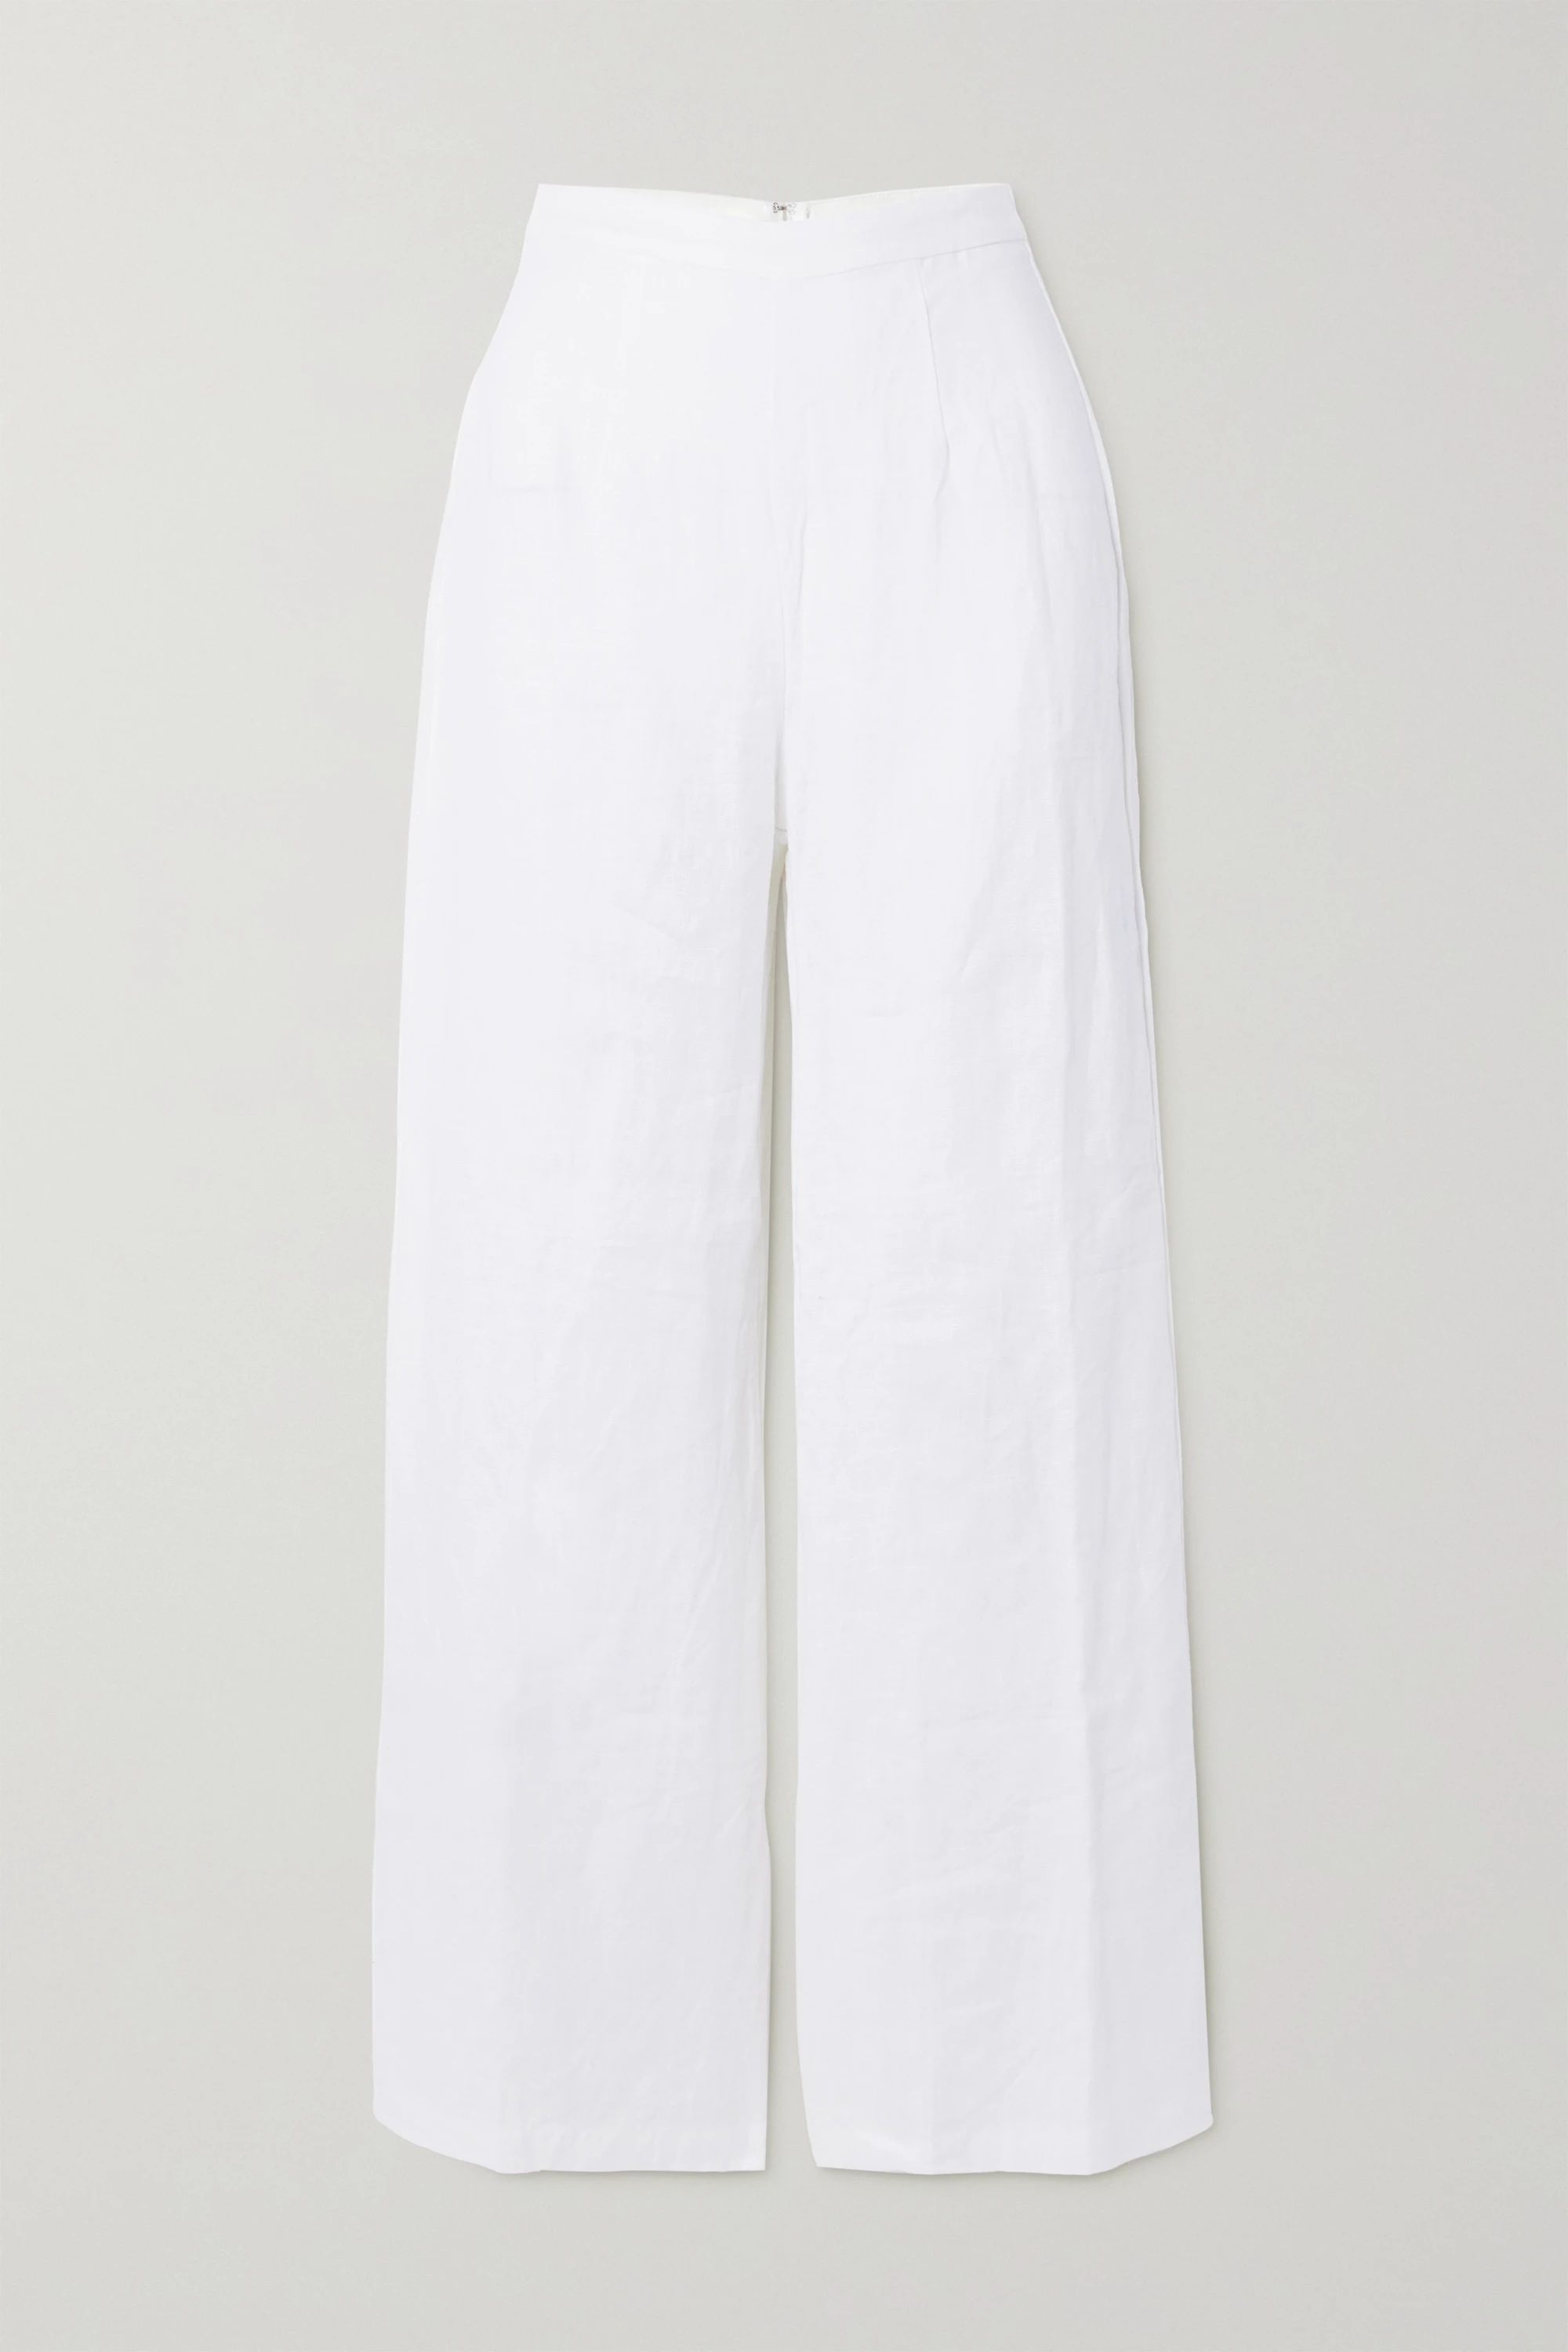 White + NET SUSTAIN Sibyl linen wide-leg pants | Faithfull The Brand | NET-A-PORTER | NET-A-PORTER (US)